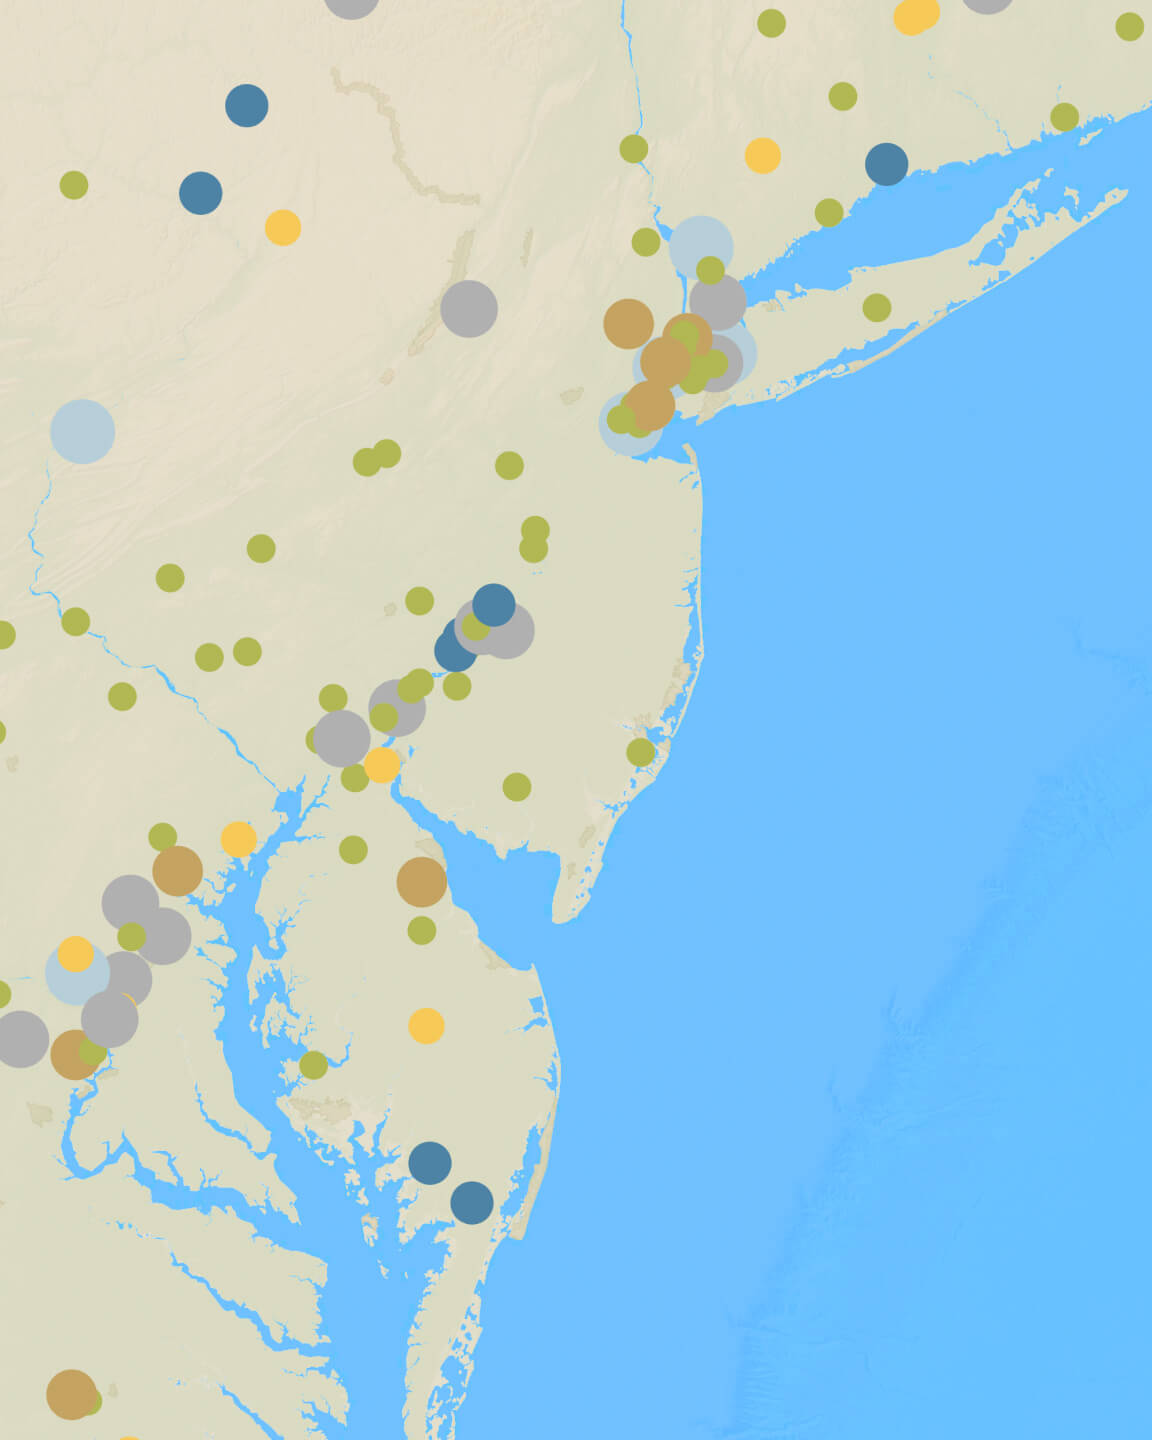 미국 동부 해안 지역의 대기질을 원형 밀도로 표시한 맵